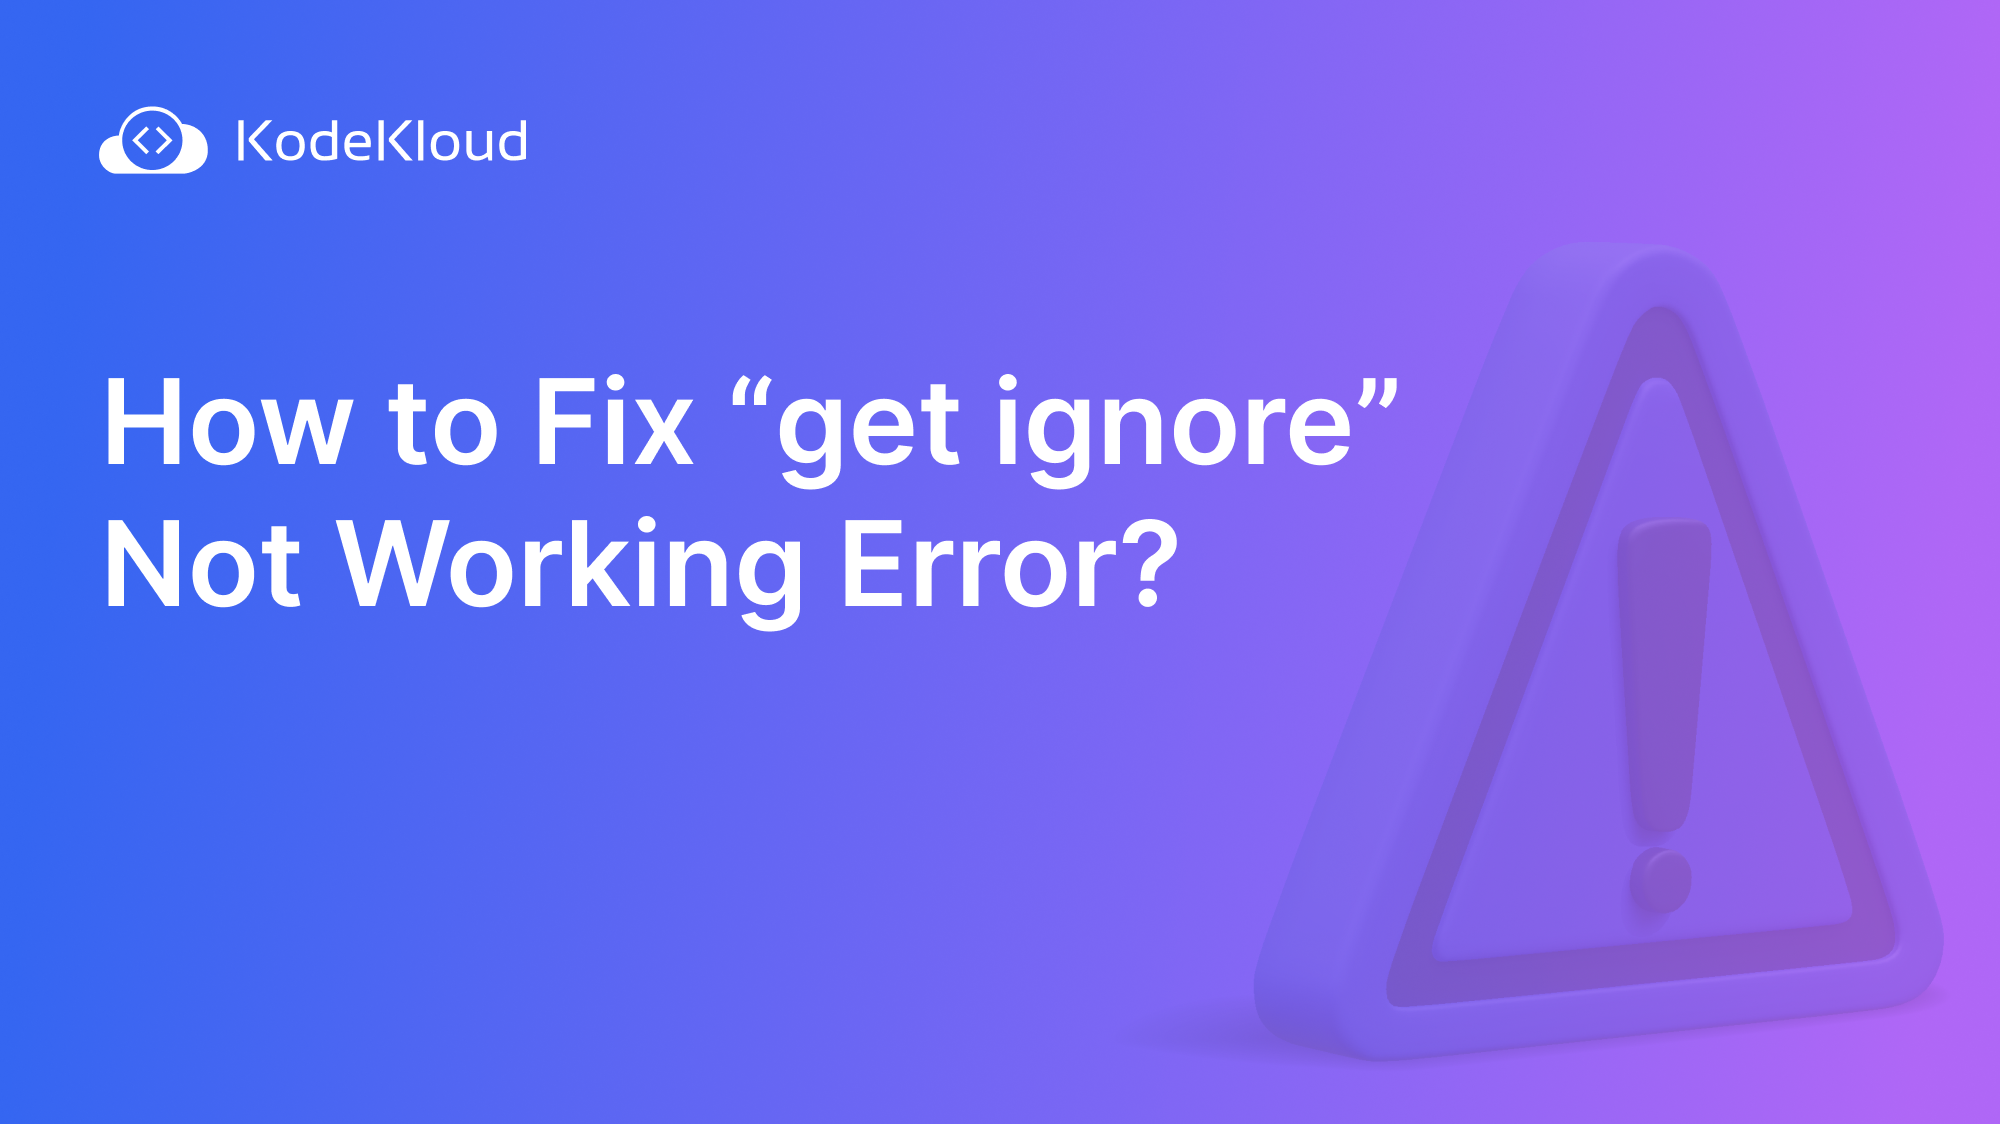 How to Fix "git ignore" Not Working Error?